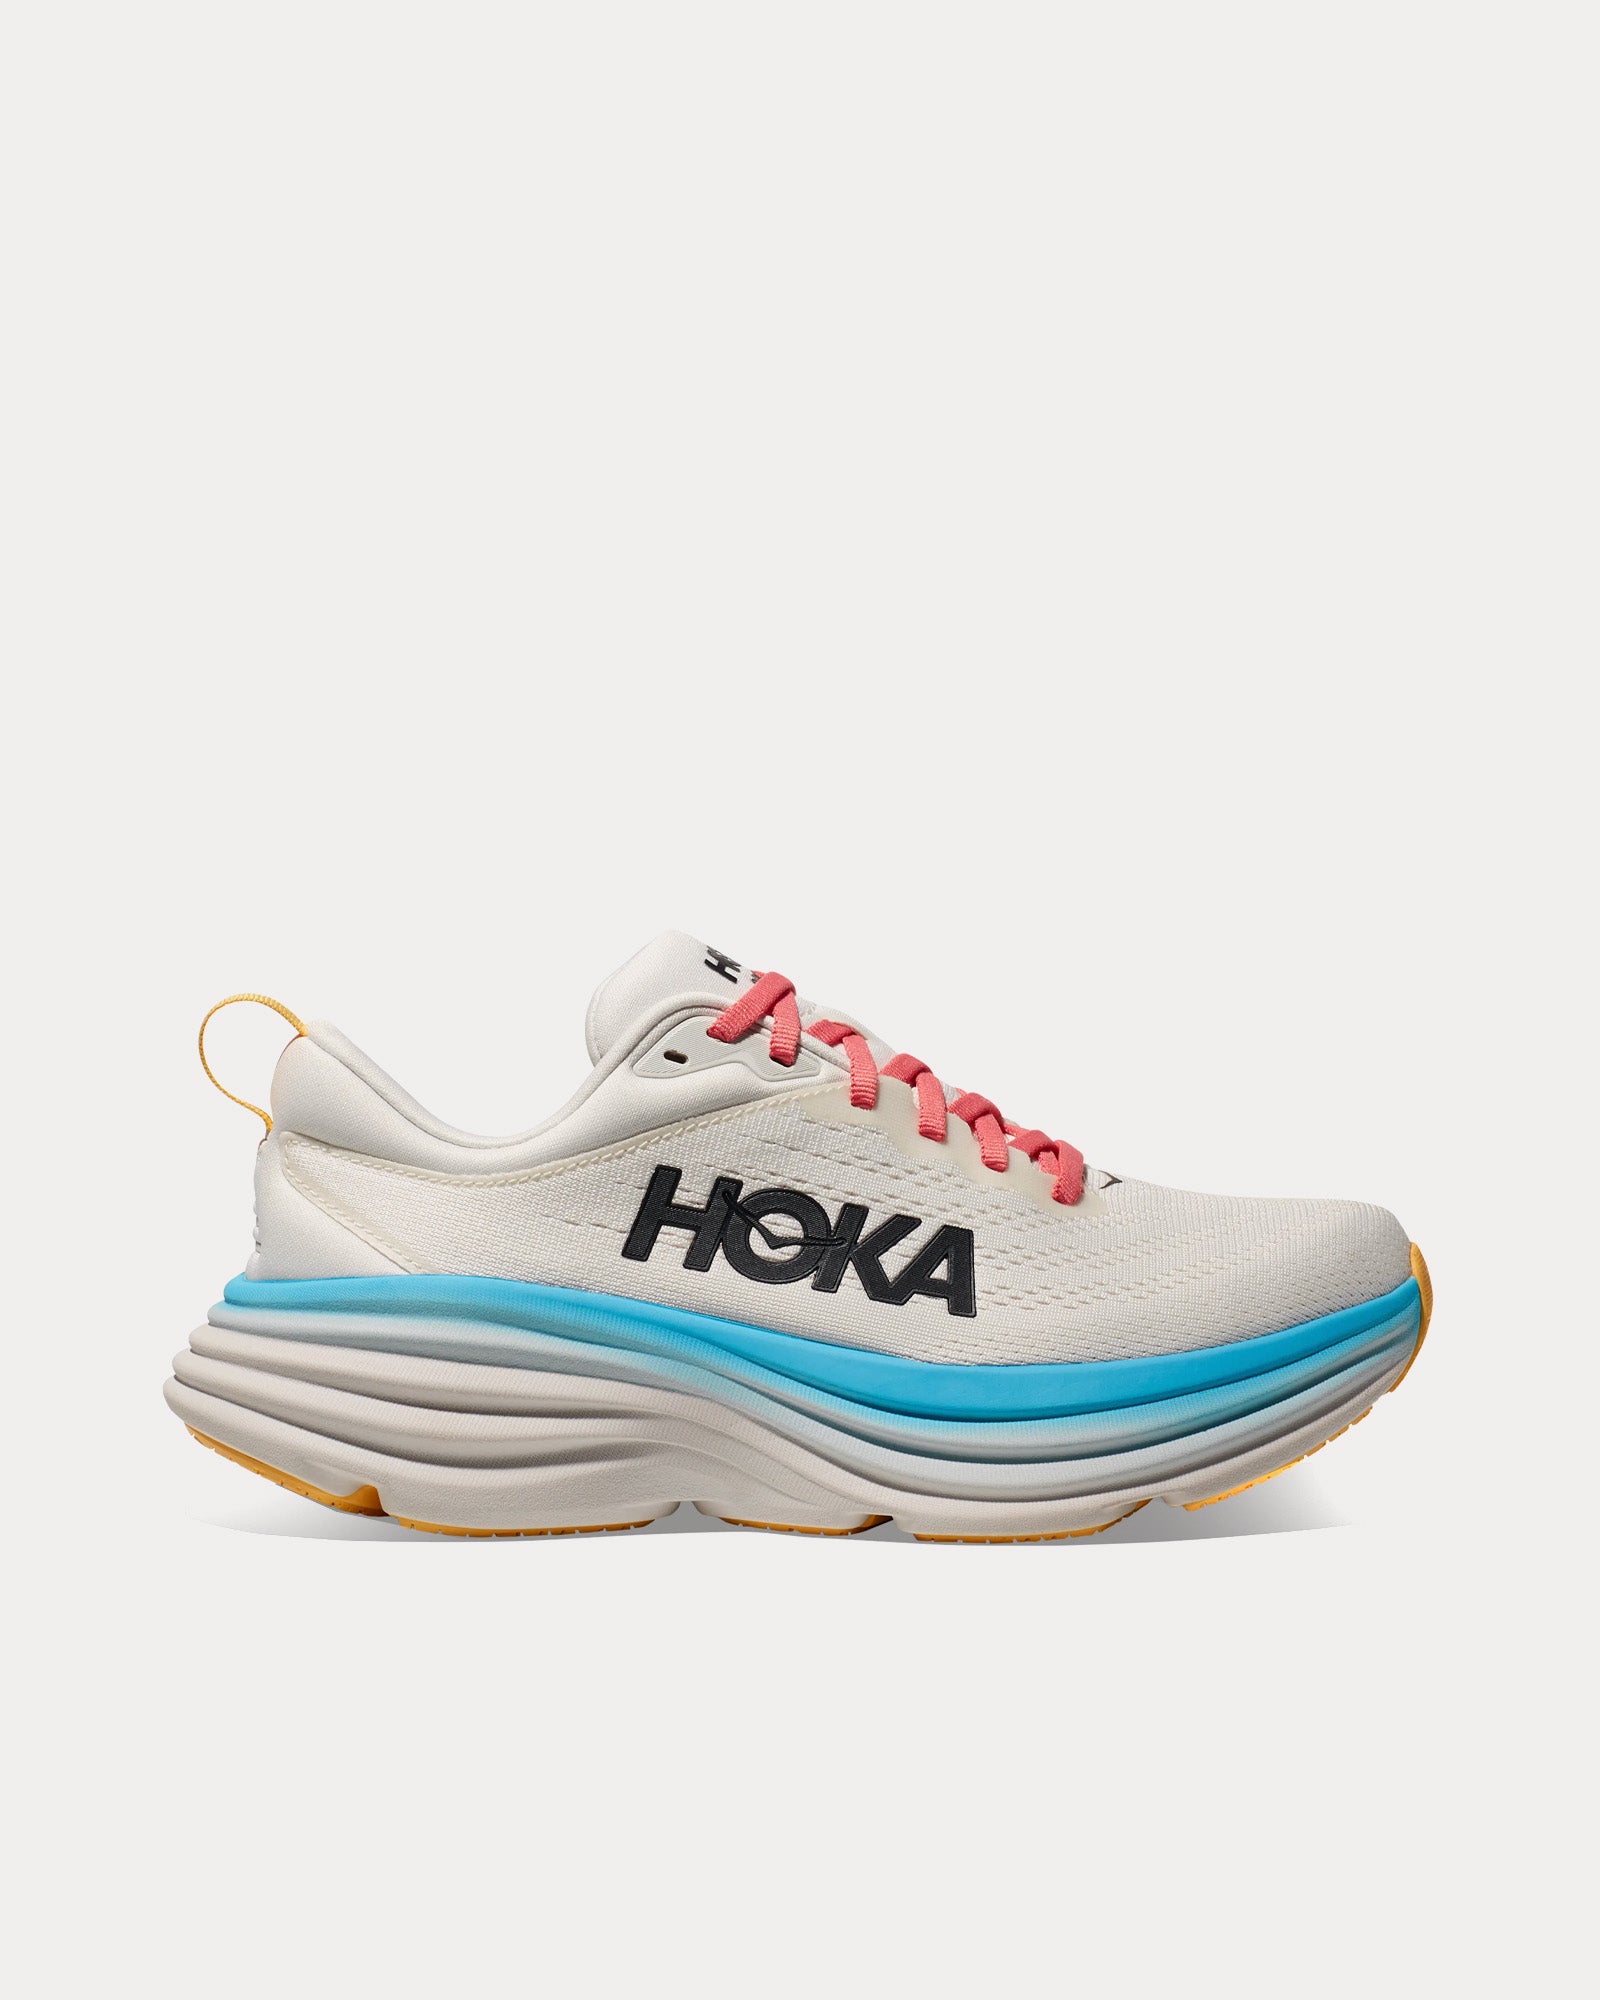 Hoka - Bondi 8 Blanc De Blanc / Swim Day Running Shoes